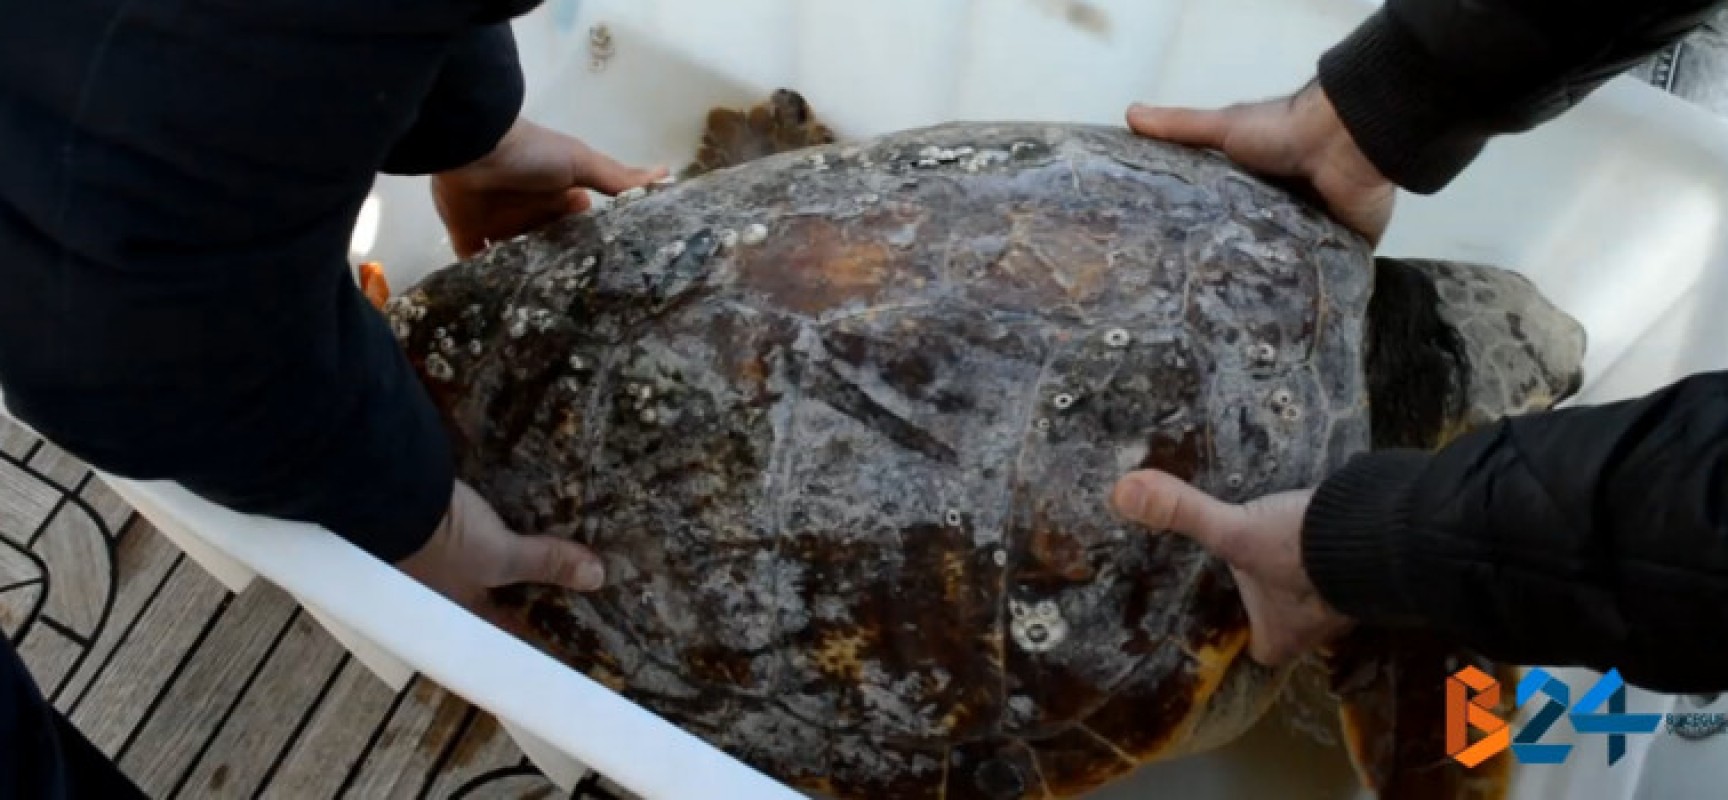 Centro di recupero Wwf, liberate sei tartarughe marine catturate